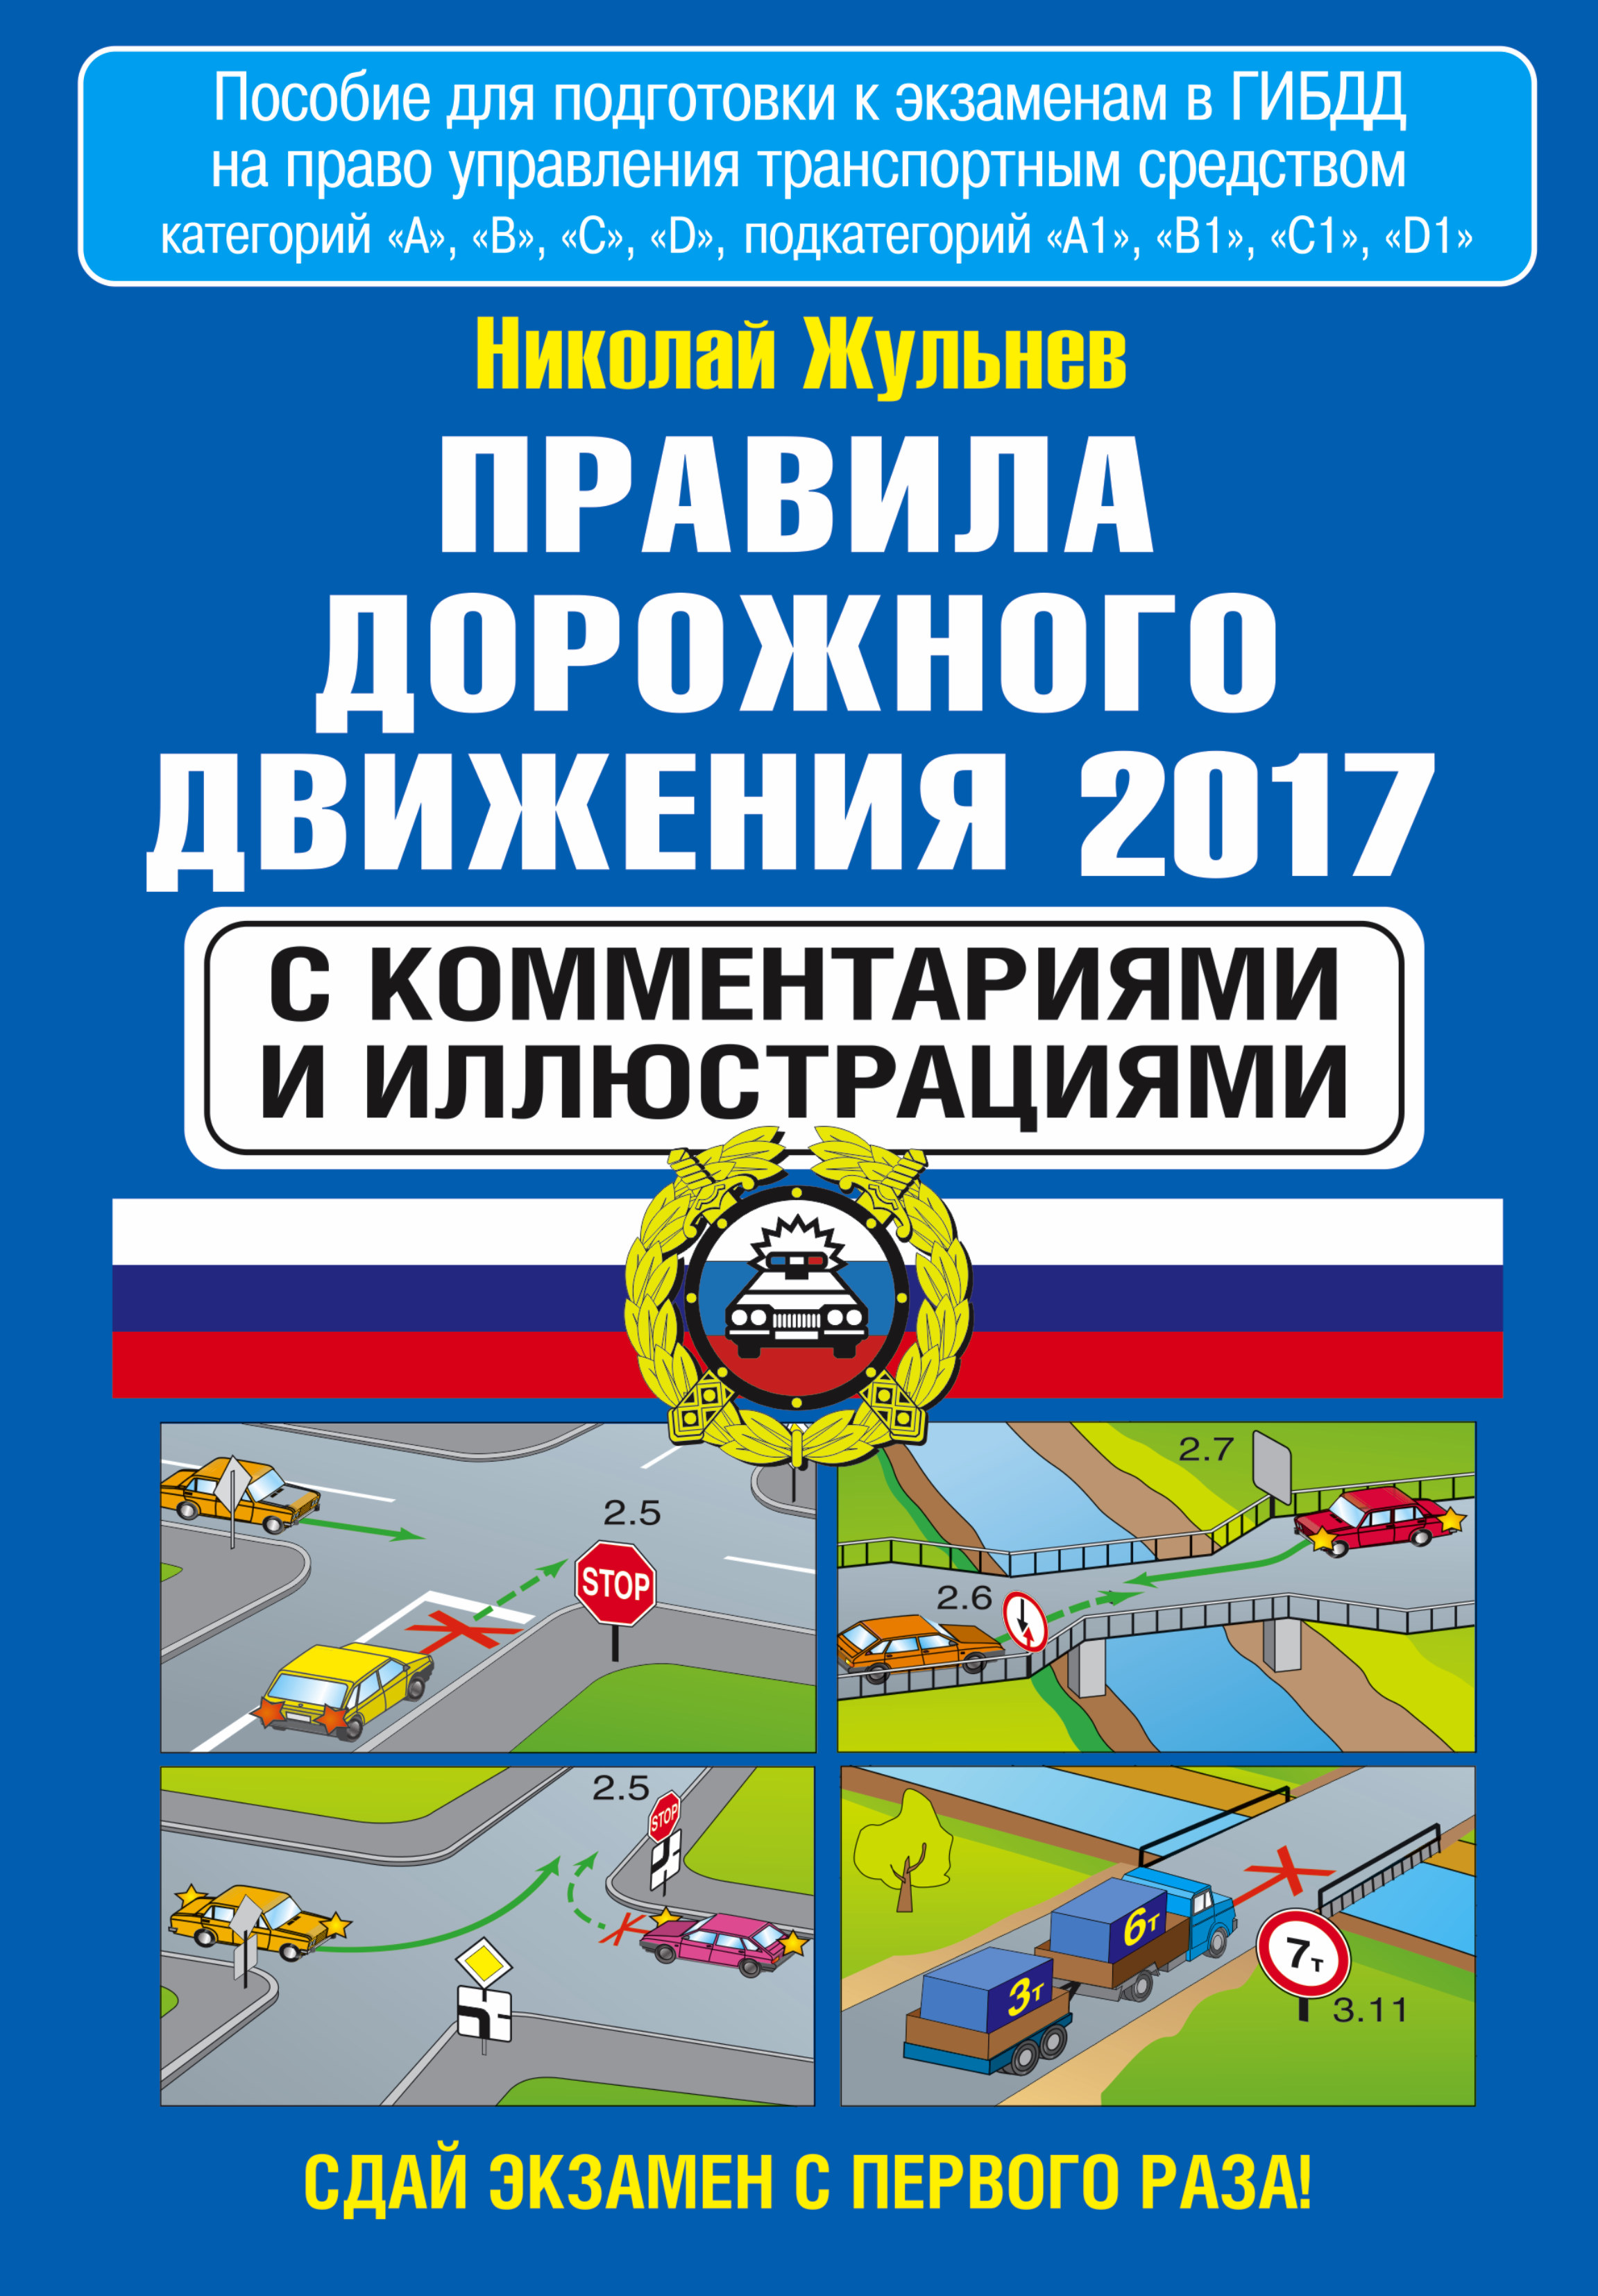 Правила дорожного движения 2017 с комментариями и иллюстрациями